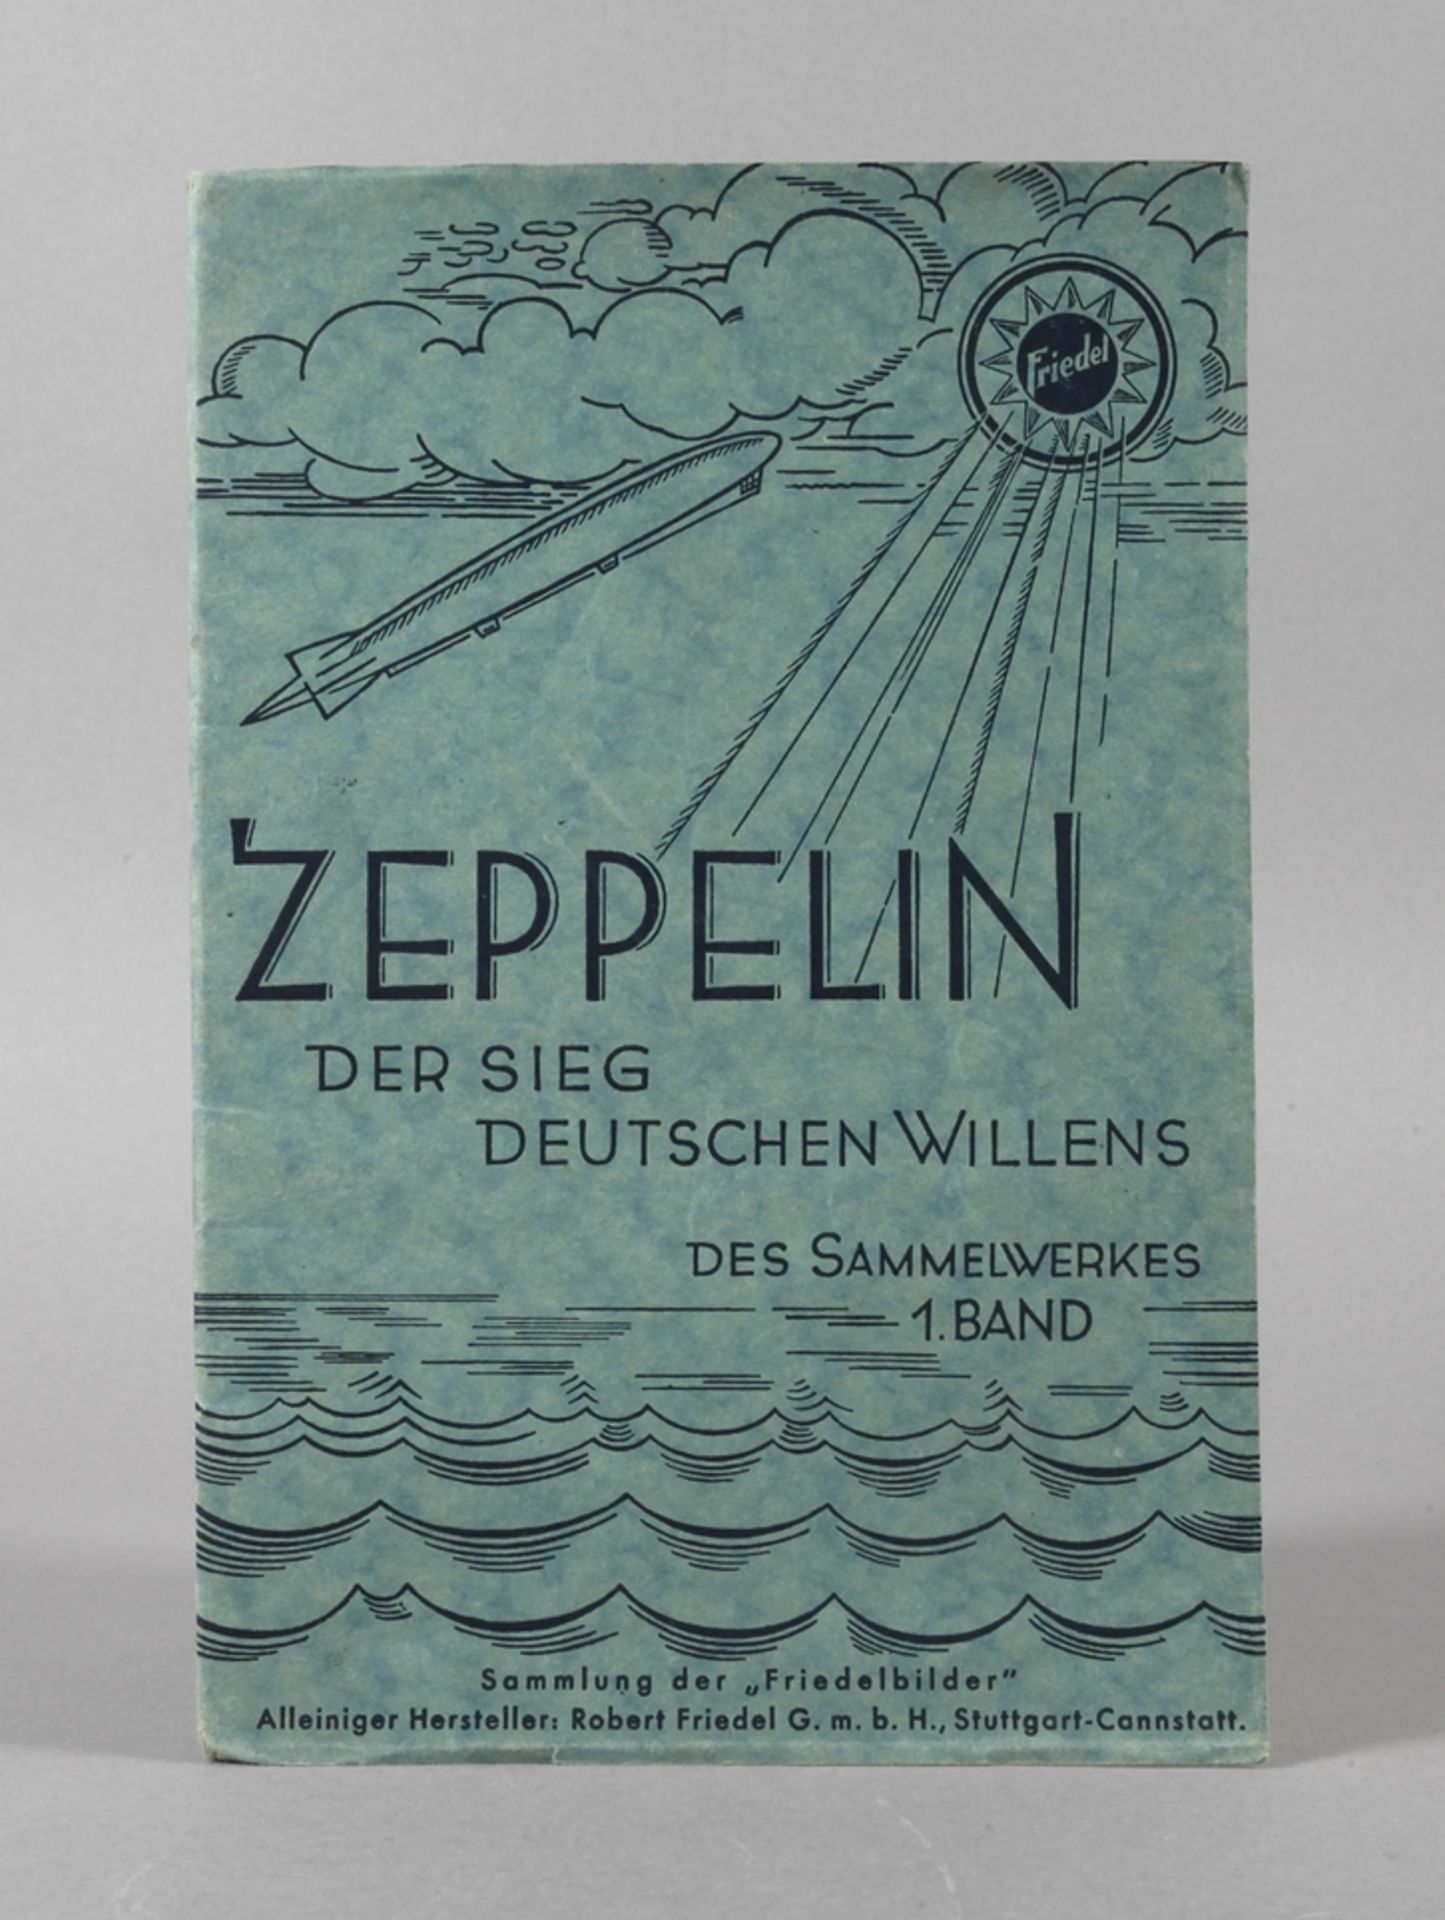 Zeppelin"Der Sieg Deutschen Willens", des Sammelwerkes 1. Band, Sammlung der Friedelbilder,